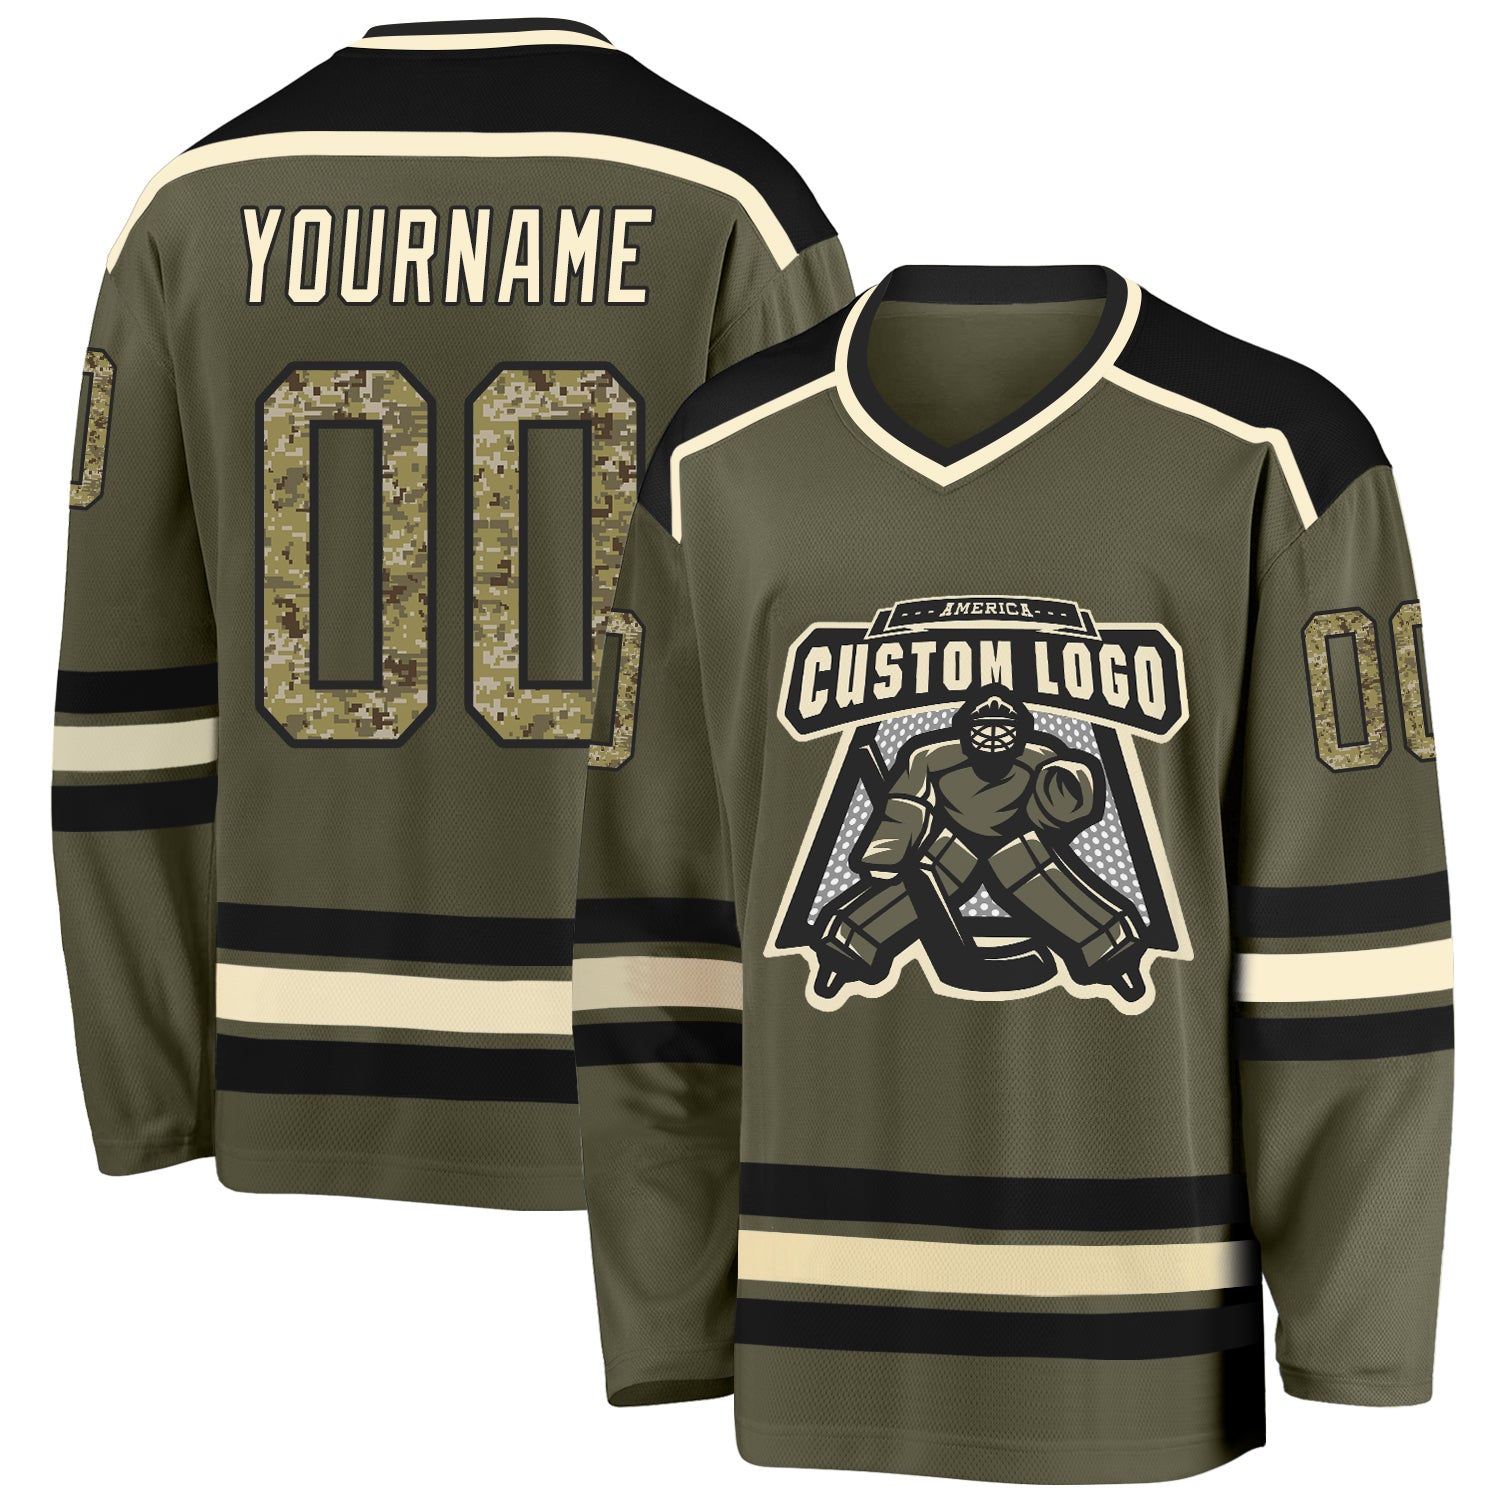 Custom Hockey Jerseys with a Nationals Twill Logo